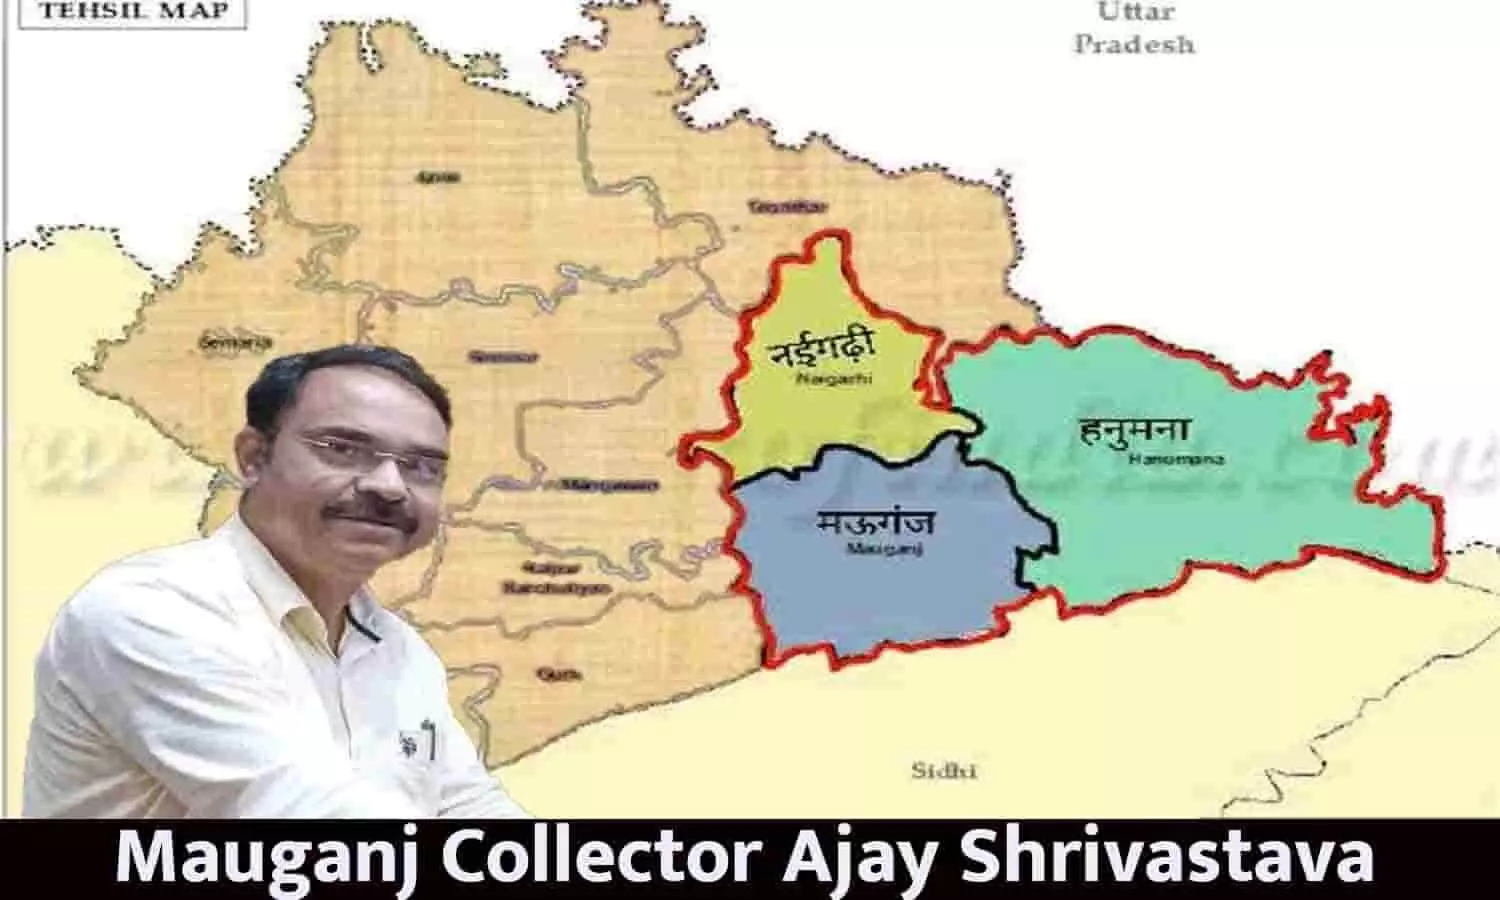 कलेक्टर अजय श्रीवास्तव ने किया मऊगंज जिले में गेंहू पंजीयन केन्द्र निर्धारित, फटाफट जाने Latest Update